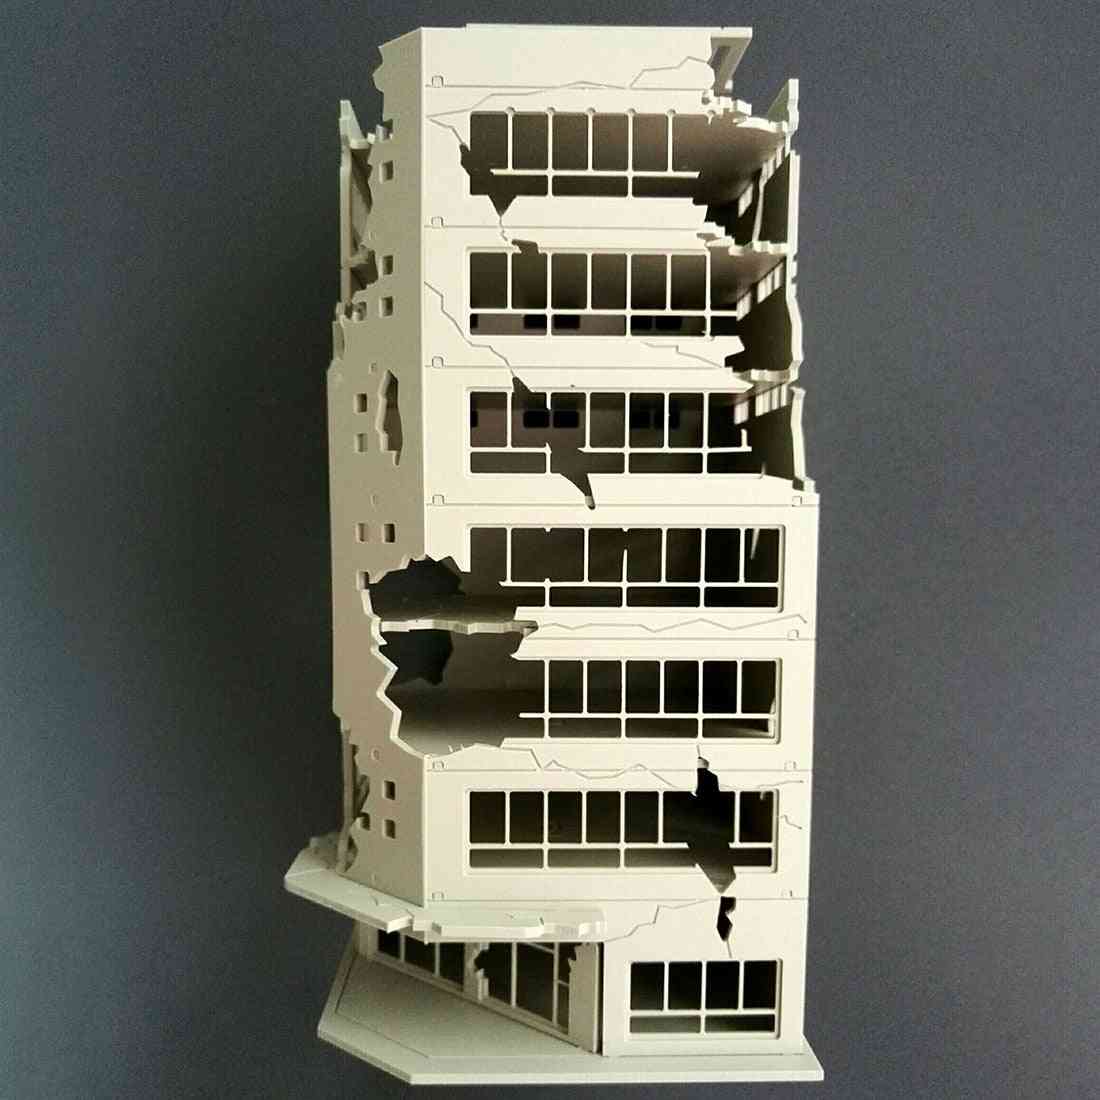 пясъчна маса разрушен модел на сграда - битка повредена